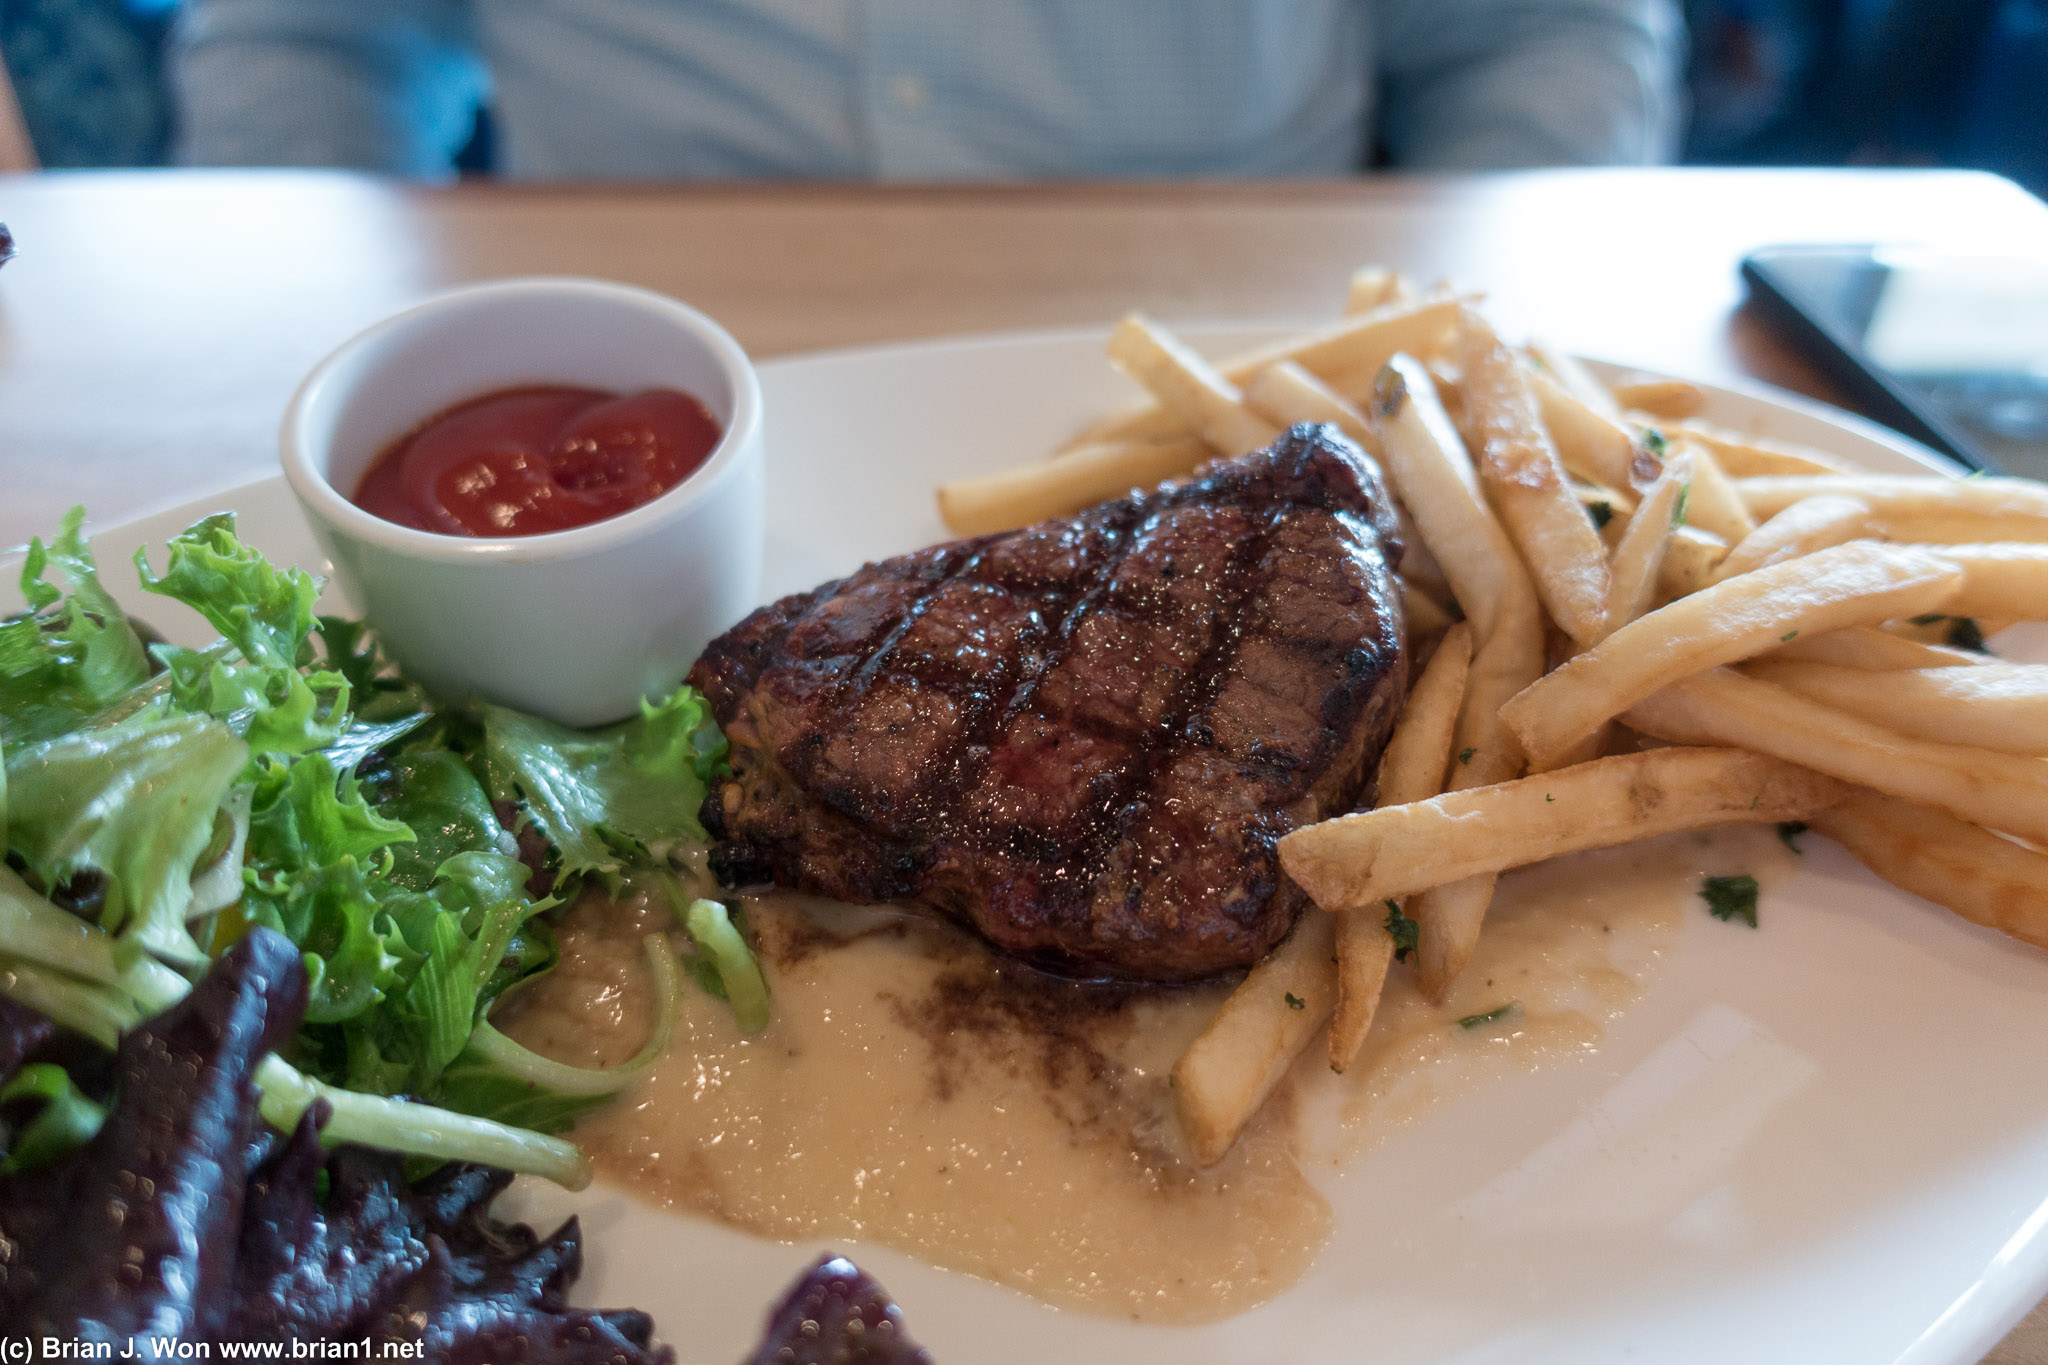 Lunch sized steak.